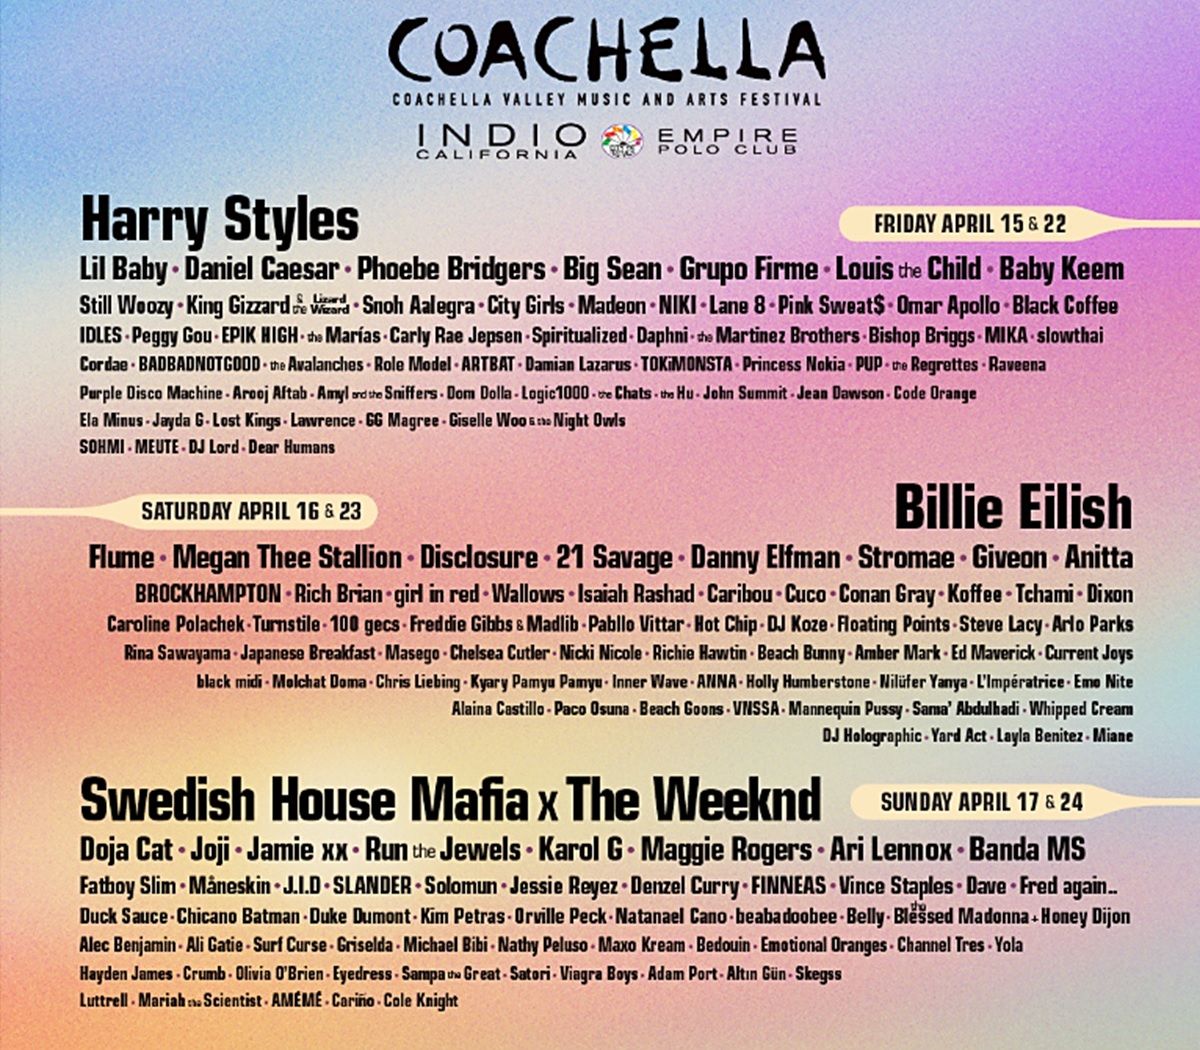 Quienes se presentaran en Coachella 2022